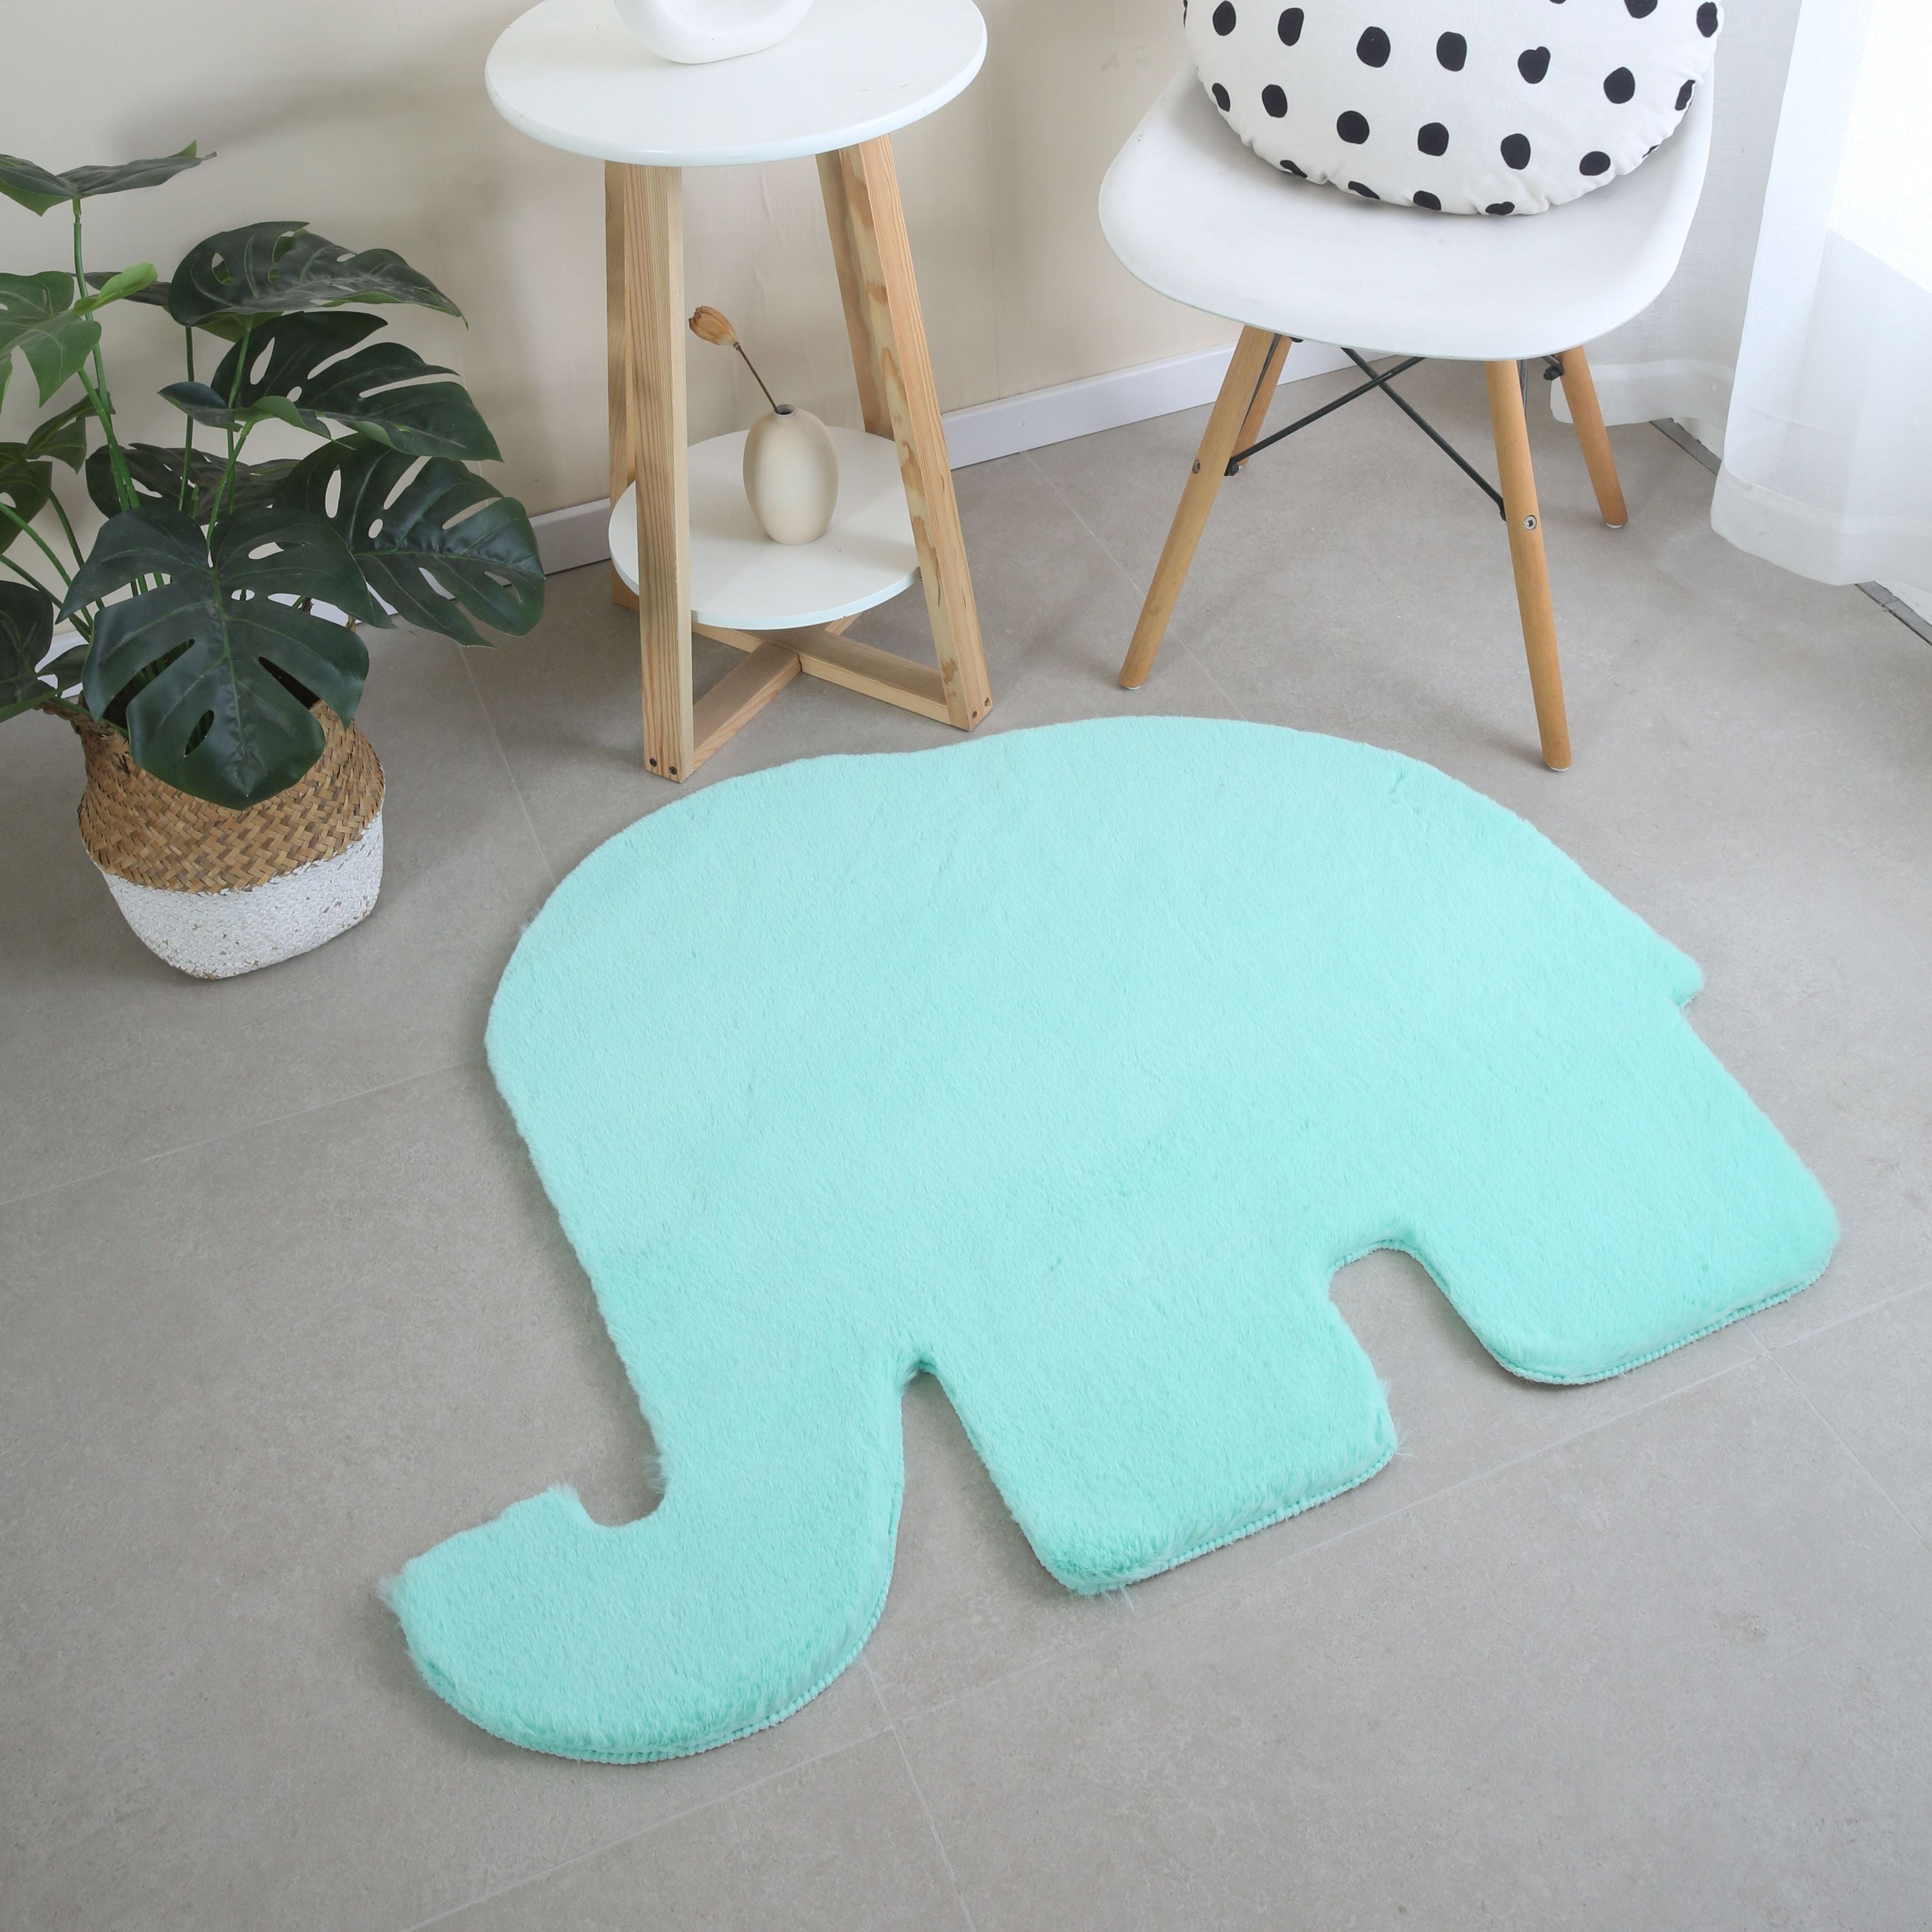 Kinderzimmer Teppich Elefant Design Kinderteppich Waschbarer Hochflor Flauschig